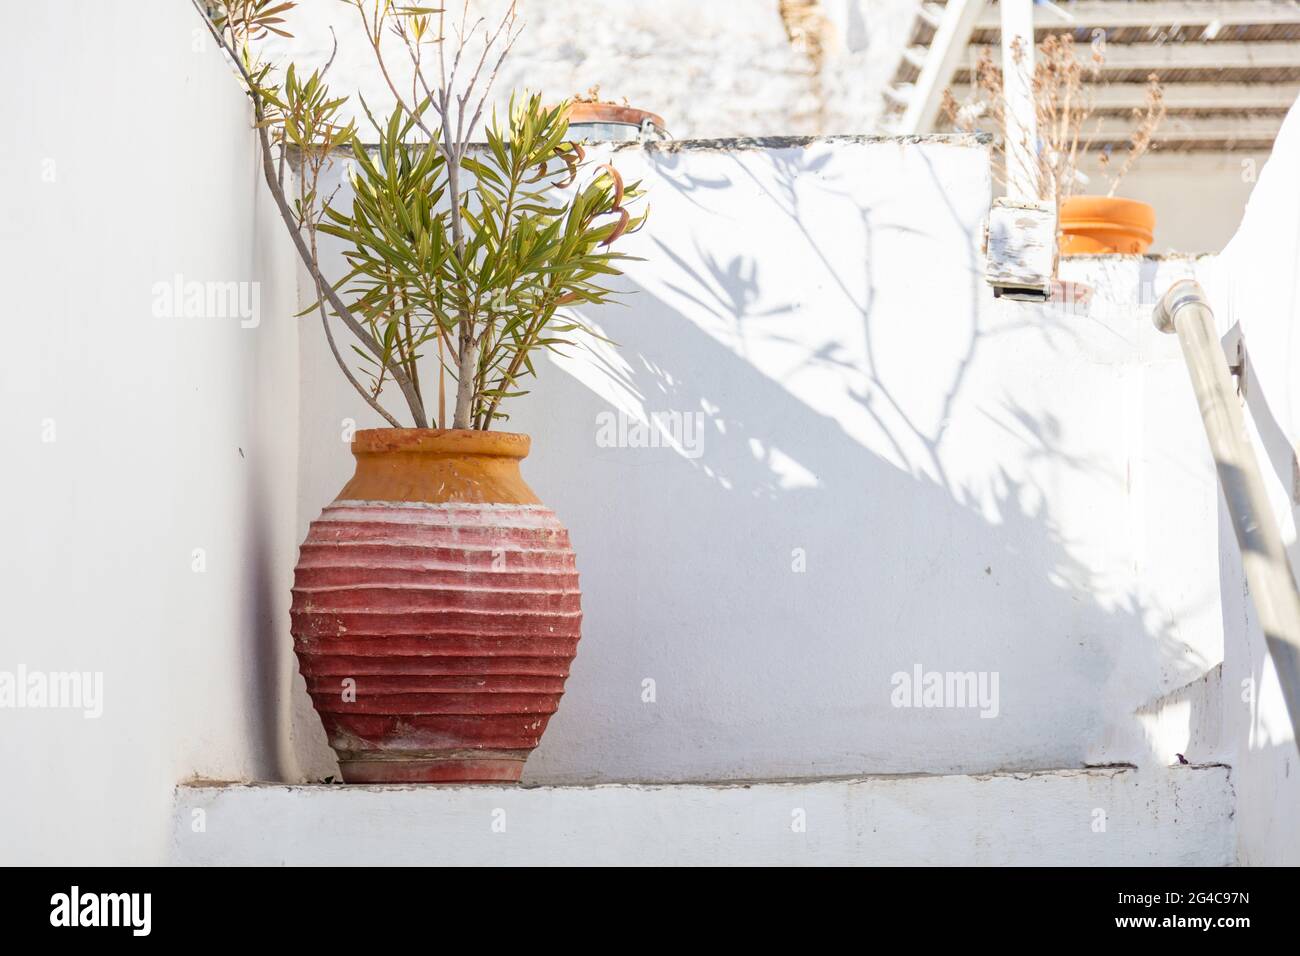 Keramik Topf handgemachte alte Amphore mit frischen grünen Pflanzen Hintergrund. Gebäude mit weiß getünchten Wänden Sommer sonnigen Tag auf Sifnos Insel, Kykladen, Gree Stockfoto